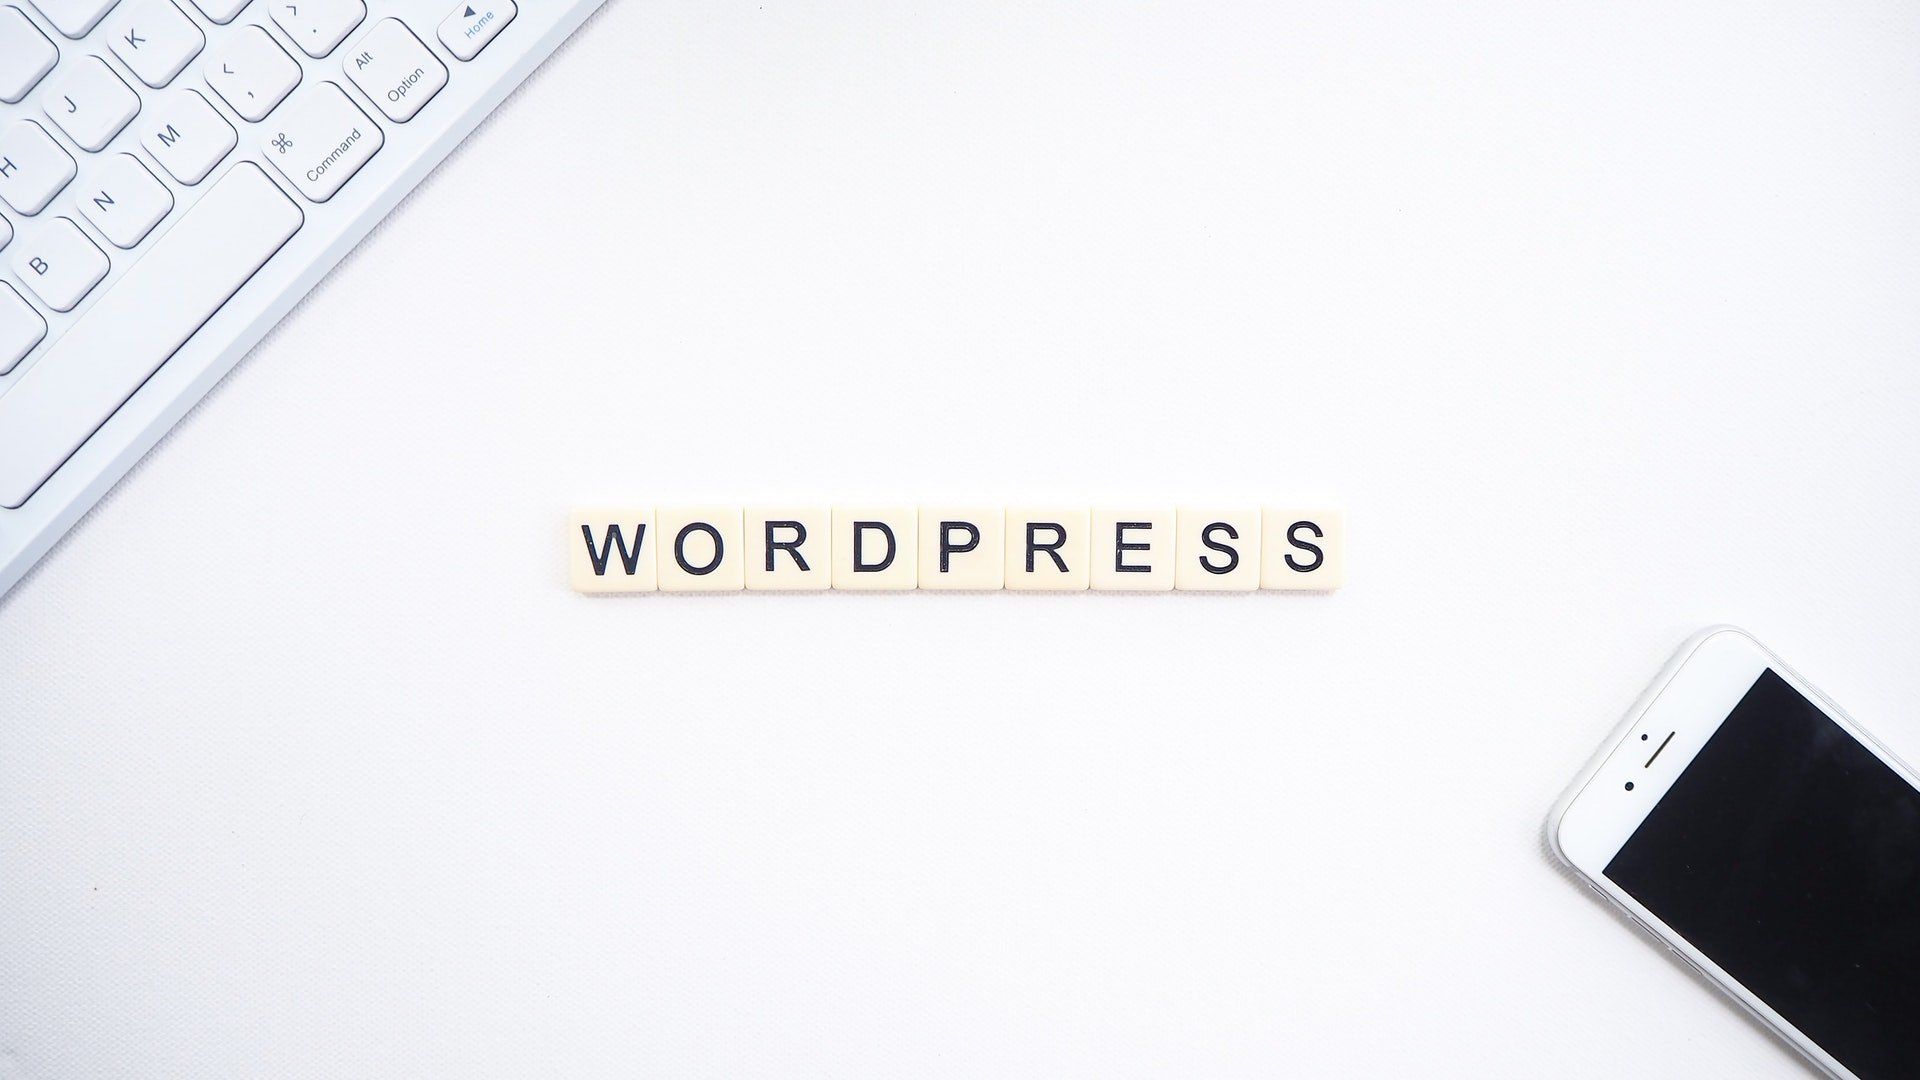 Δημιουργία WordPress blog (Οδηγός για αρχάριους)